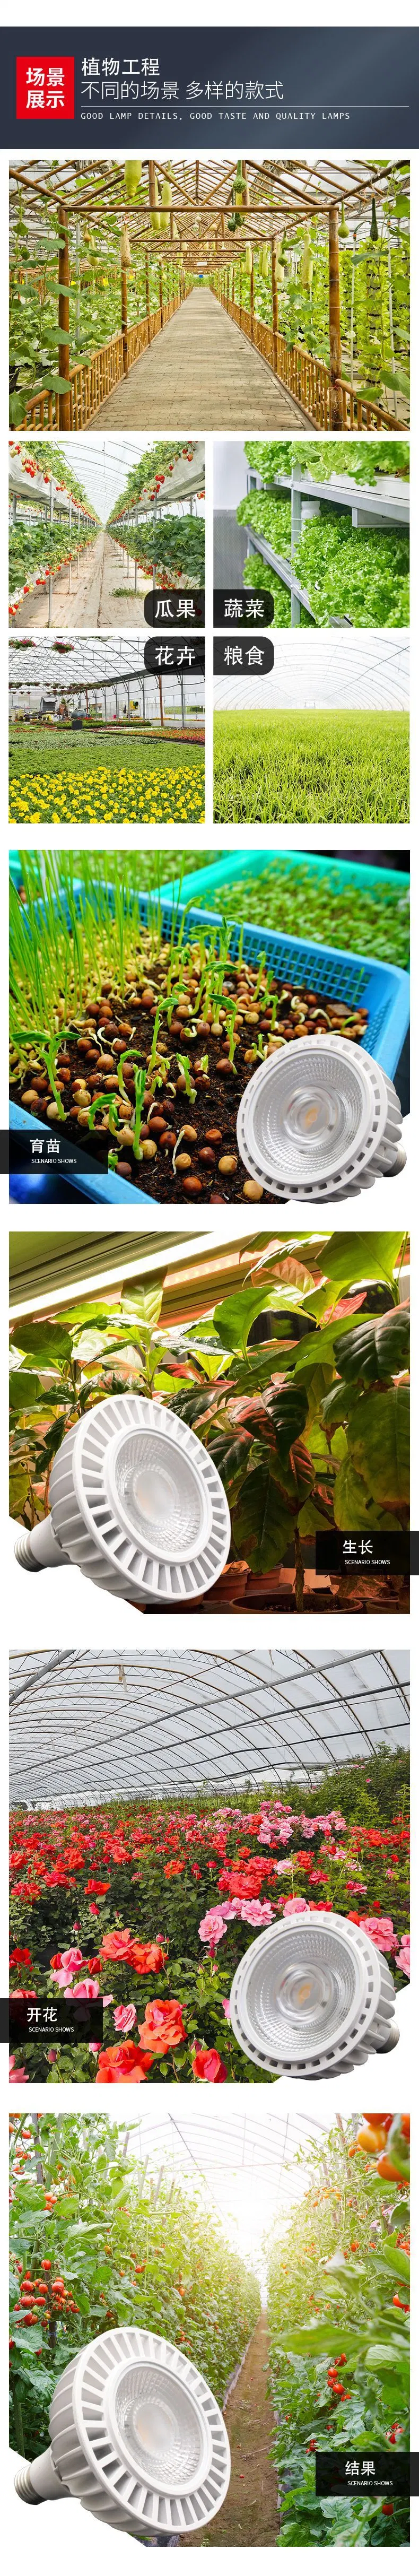 LED Plant Growth Light Full Spectrum PAR20PAR30PAR38 Indoor Succulent Pot Plant Fill Light